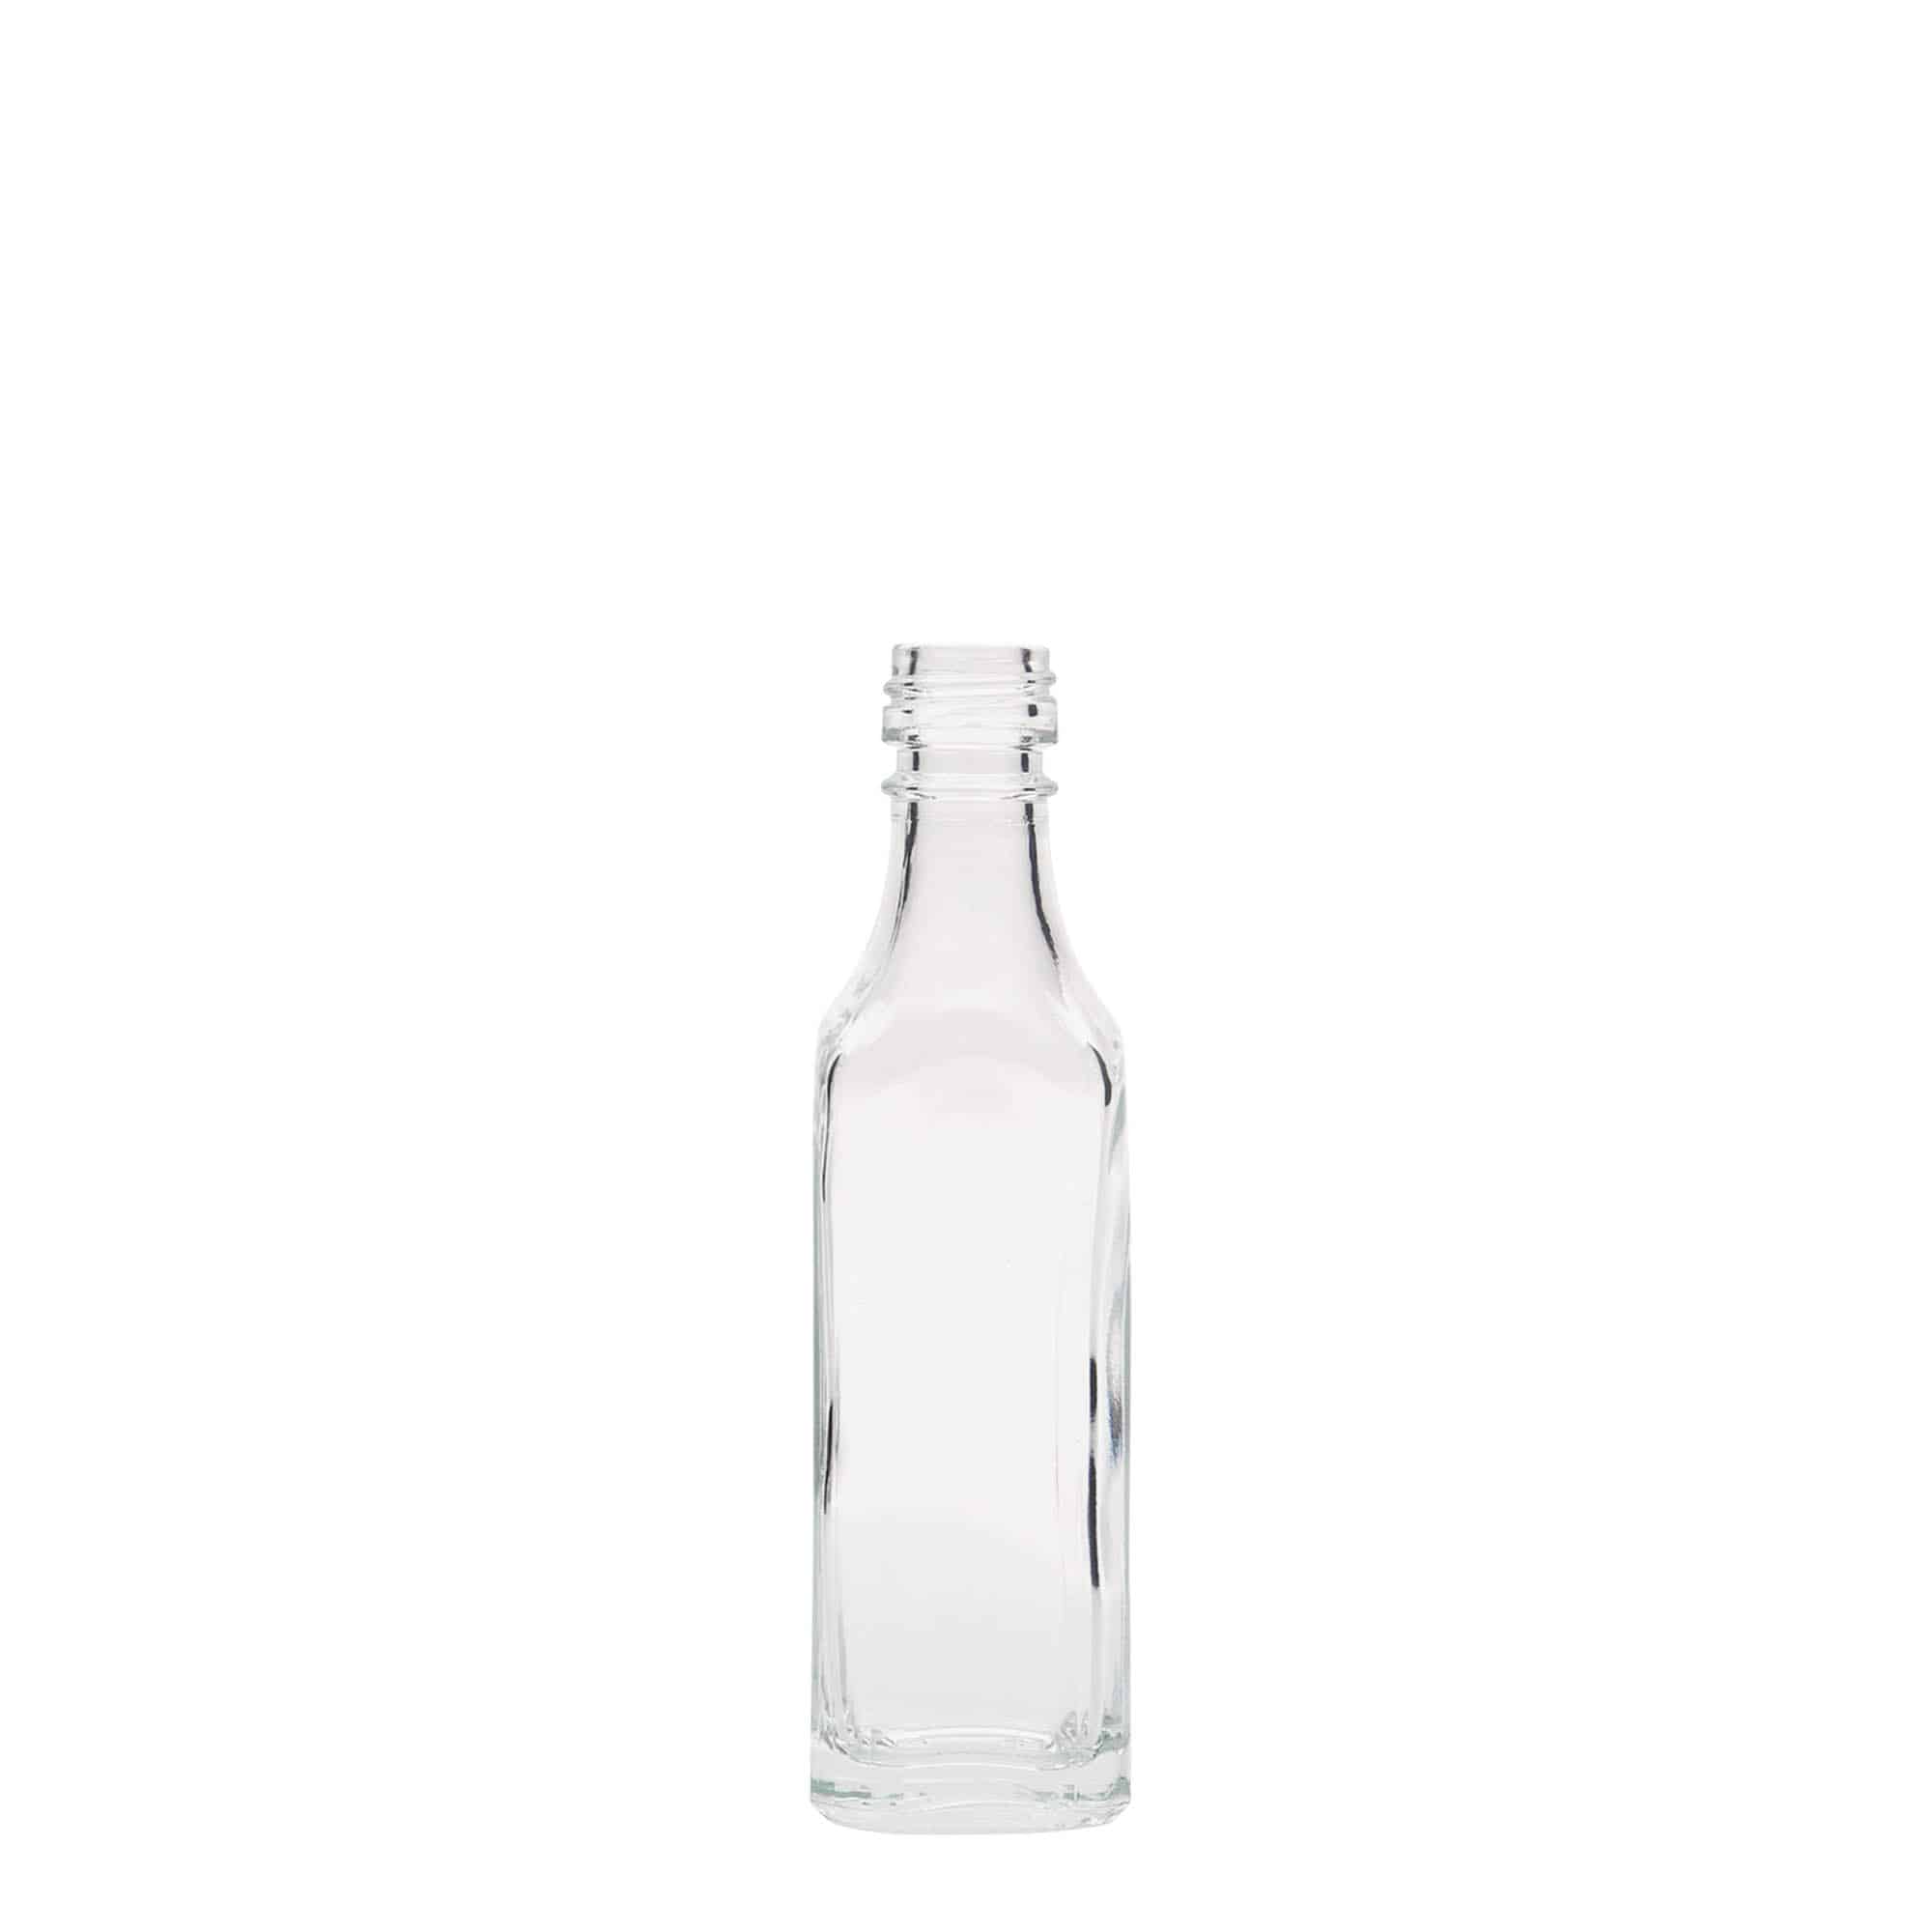 Skleněná lahev 50 ml 'Siena', čtvercová, uzávěr: PP 18